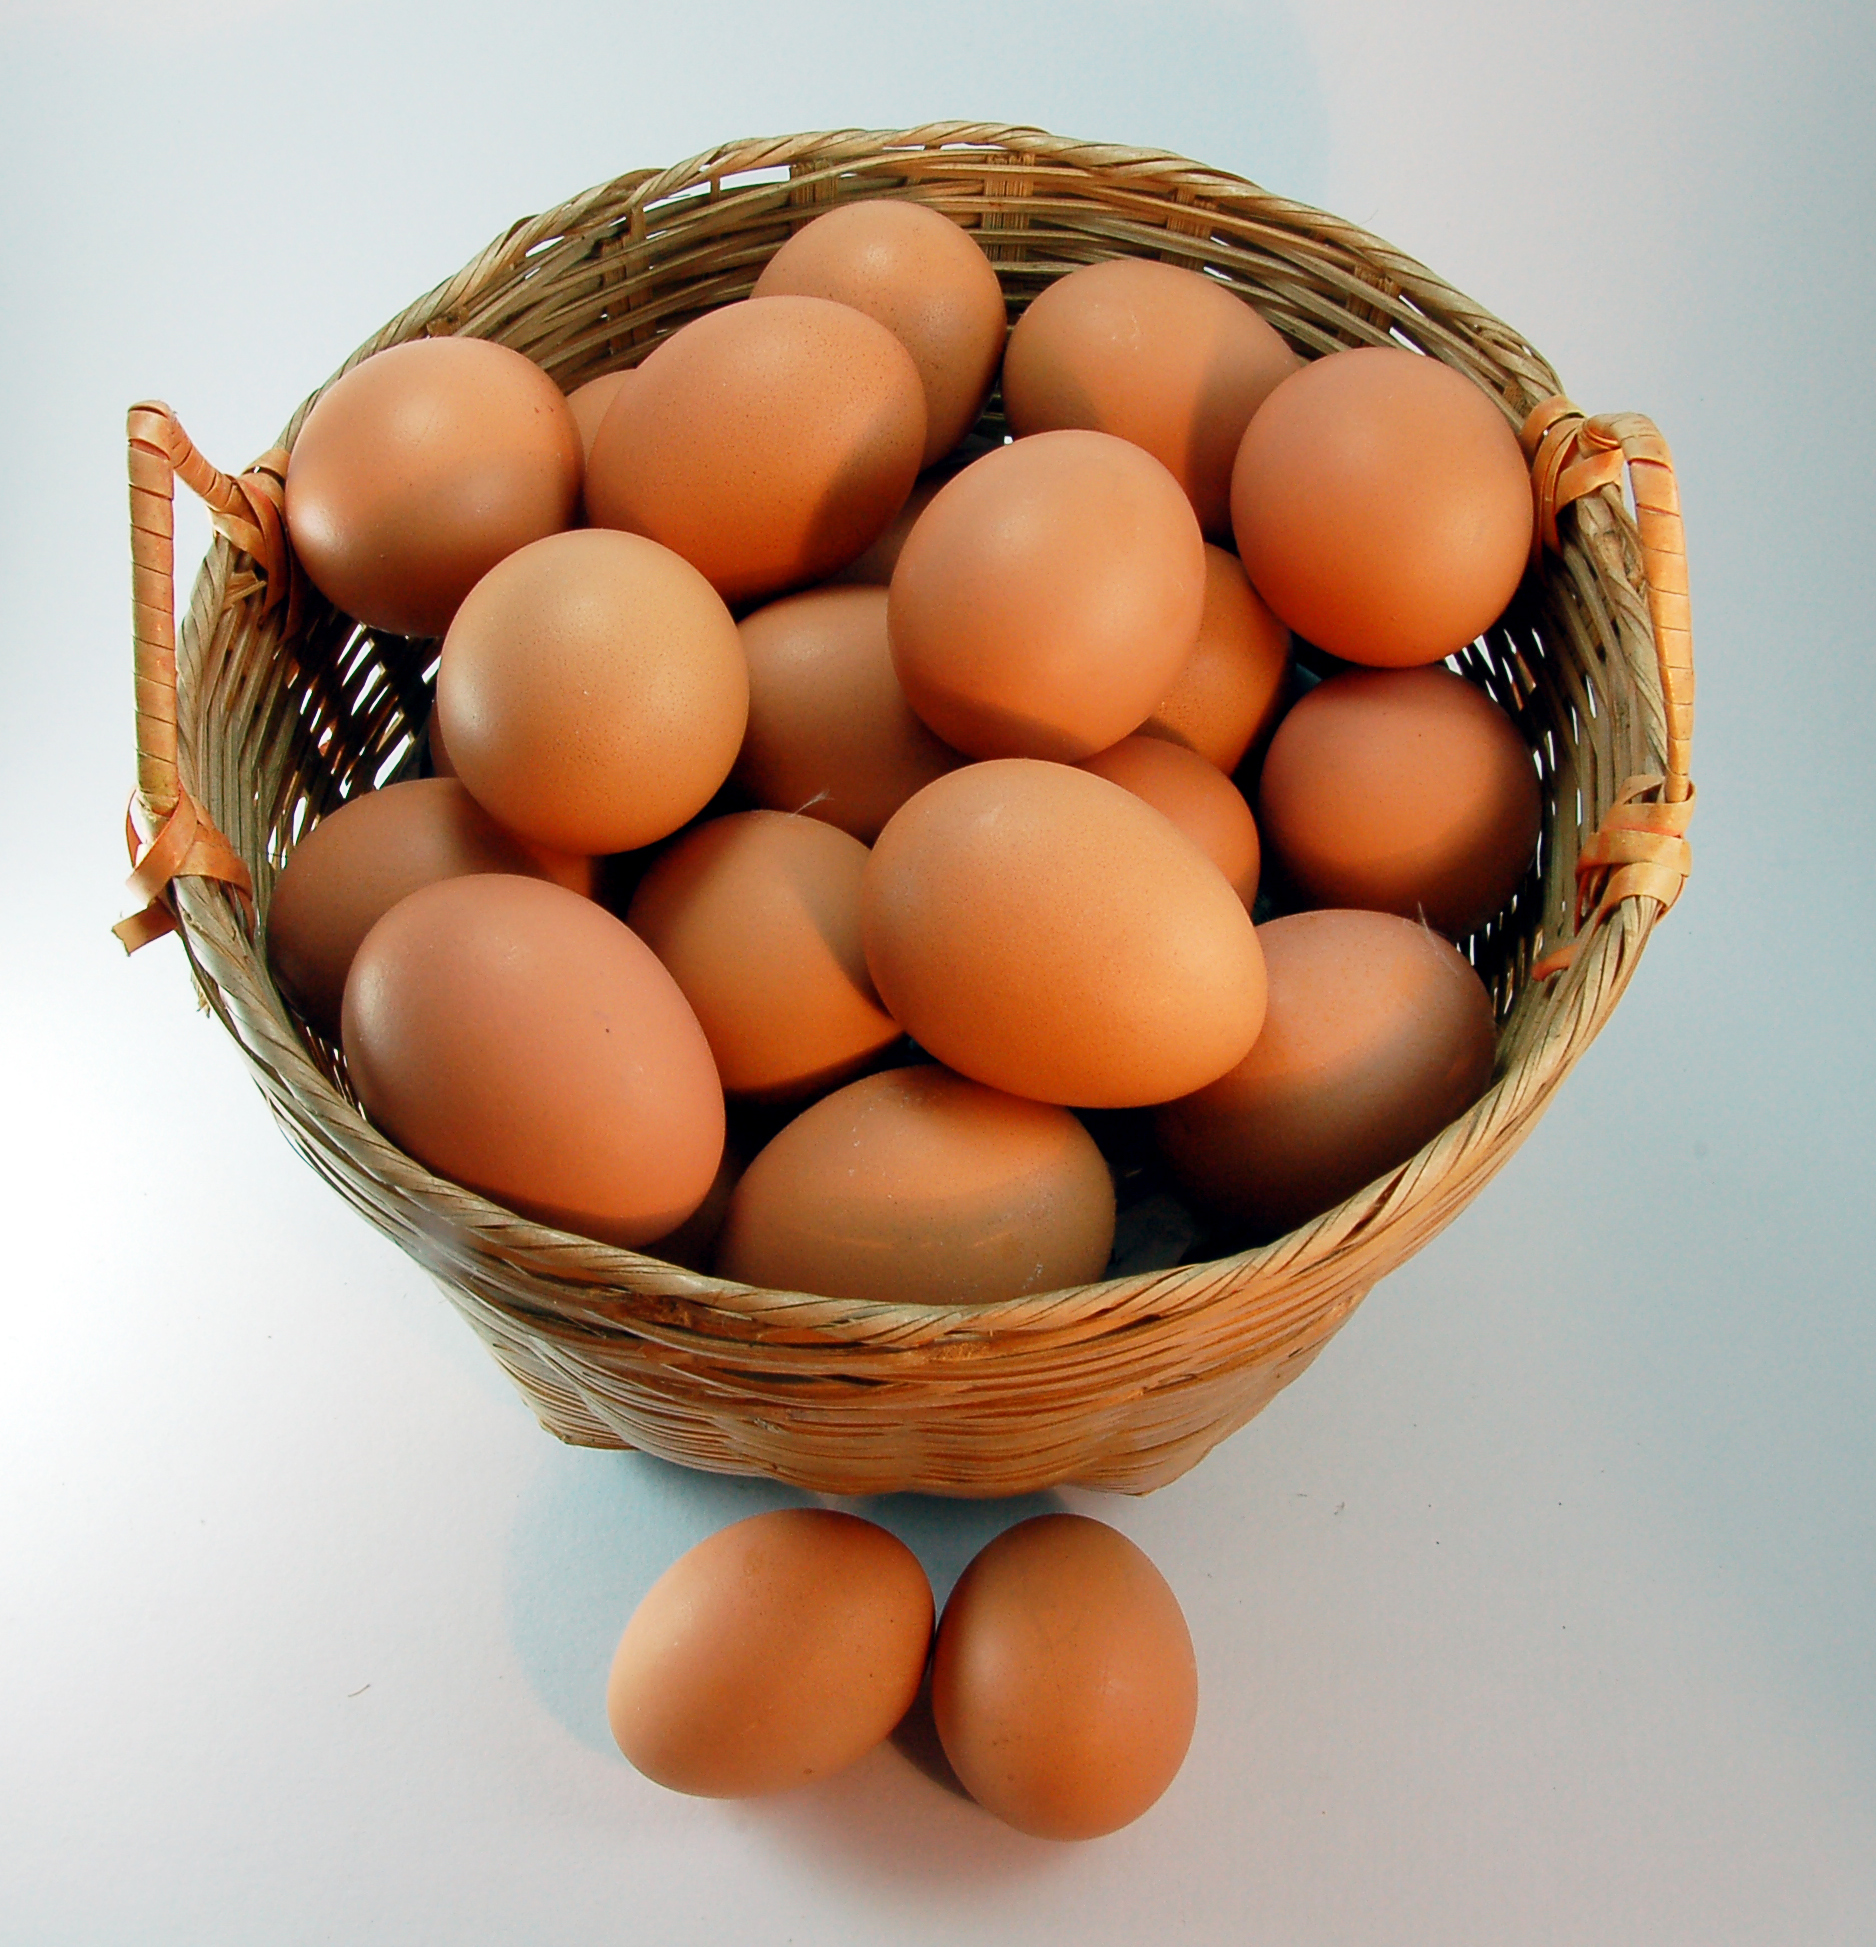 All the egg in a basket ? | MakanWind